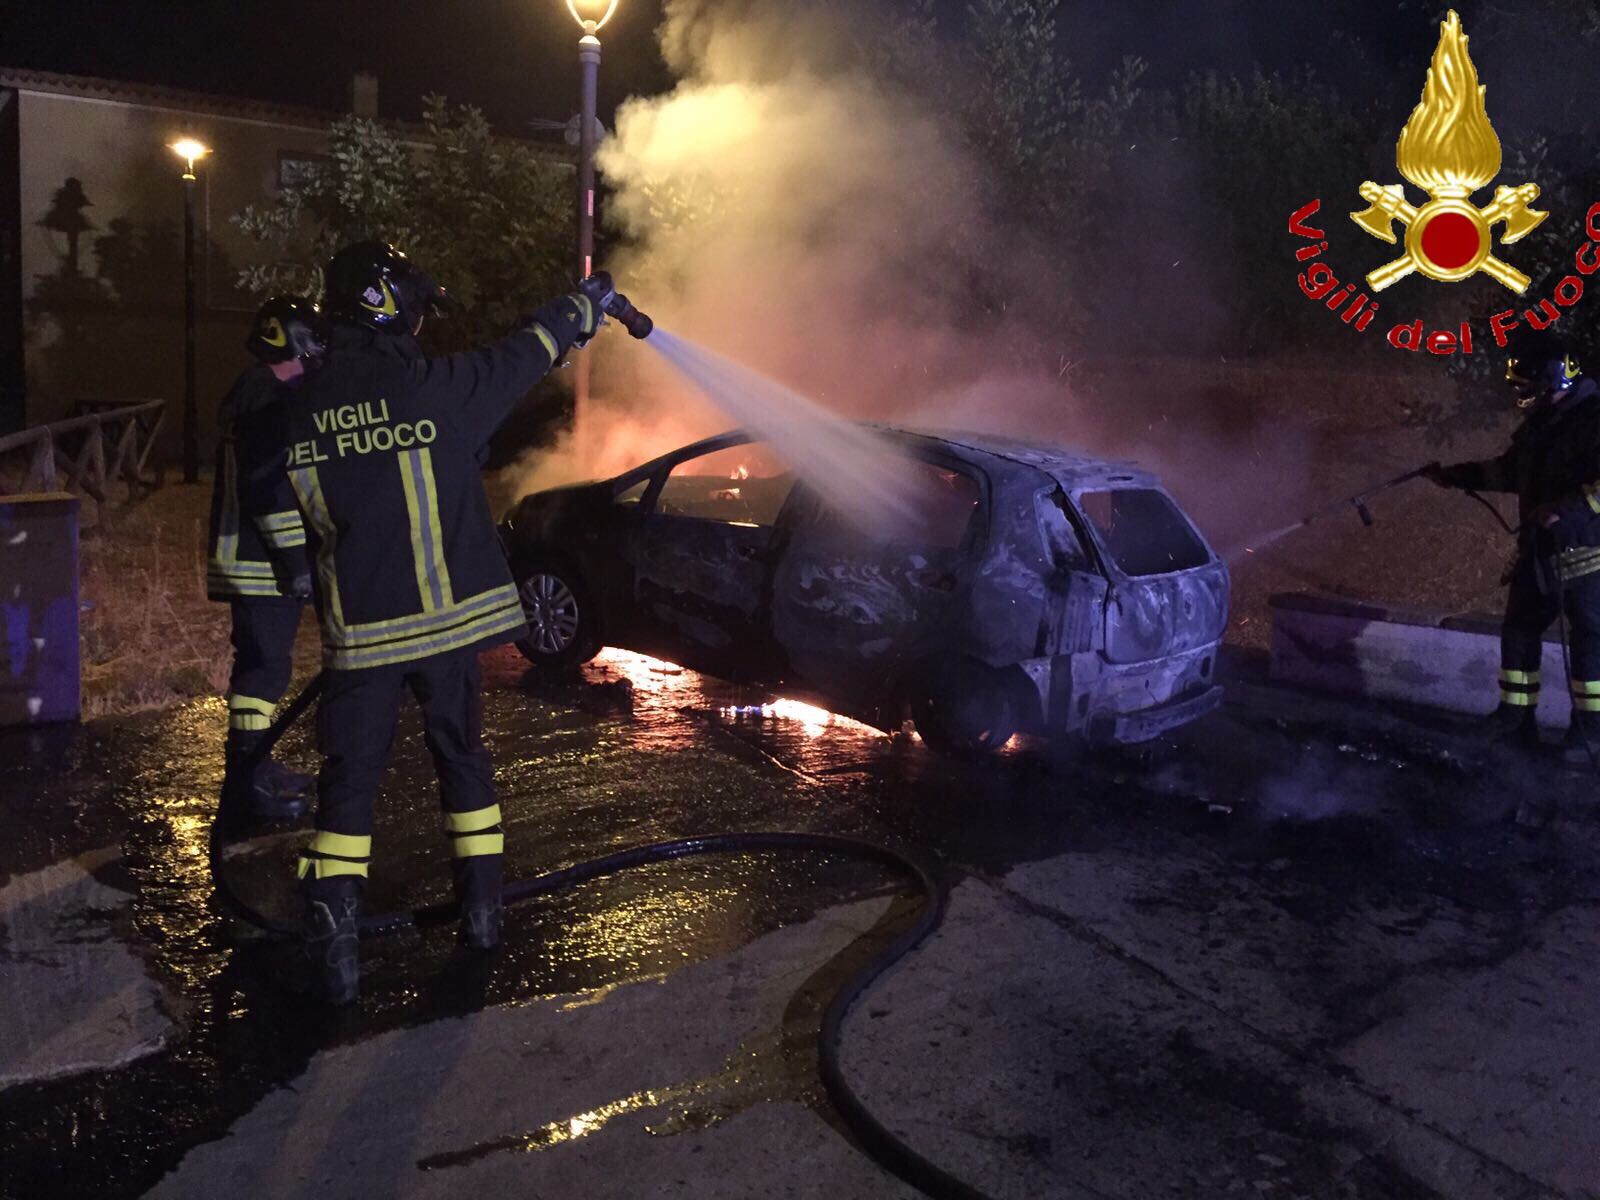 Attentato incendiario nella notte: a fuoco l’auto di una donna